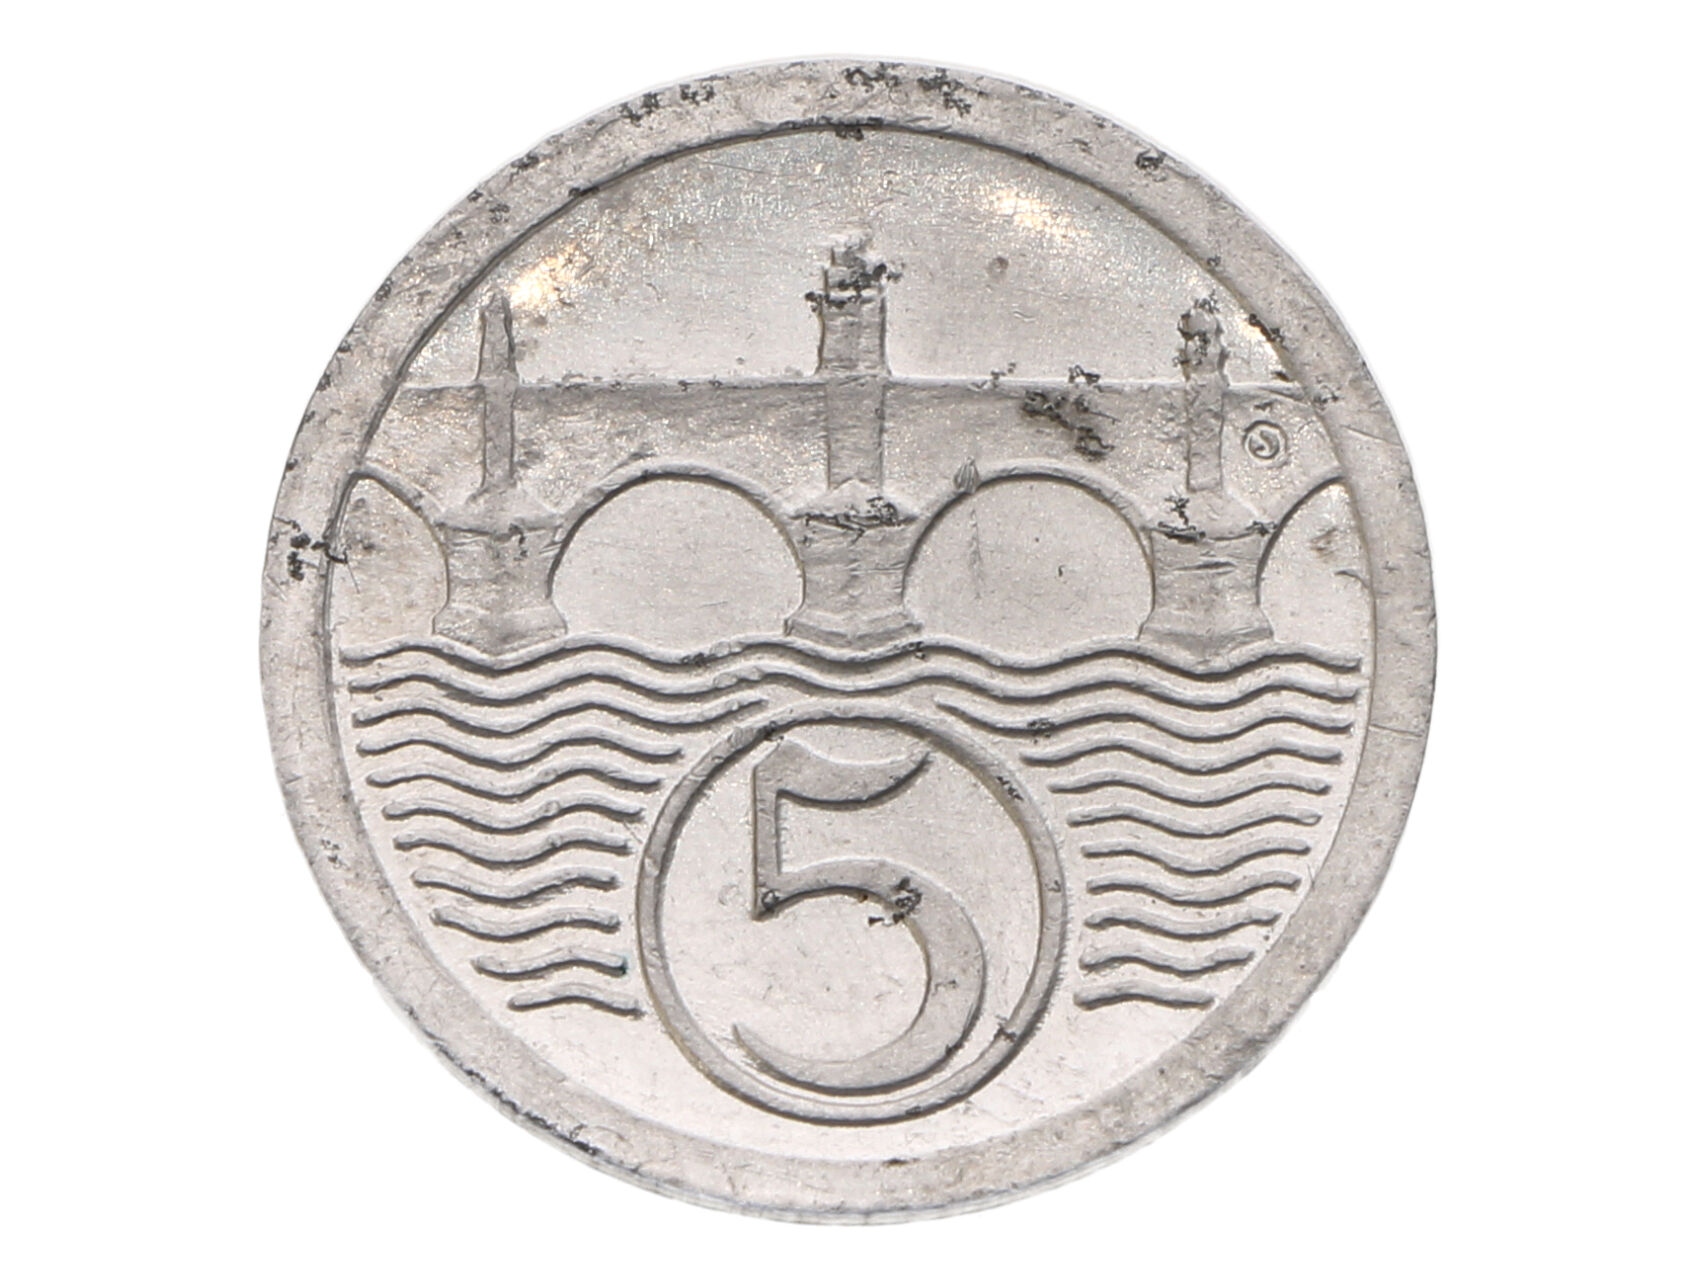 ČSSR 1945-1953 - 5 Haléř 1922, zkušební ražba Kremnica, průměr 20 mm, Al, O.Španiel, první odražek v návrhu měnové soustavy 1945, Chlapovič 73, 140, velmi vzácný